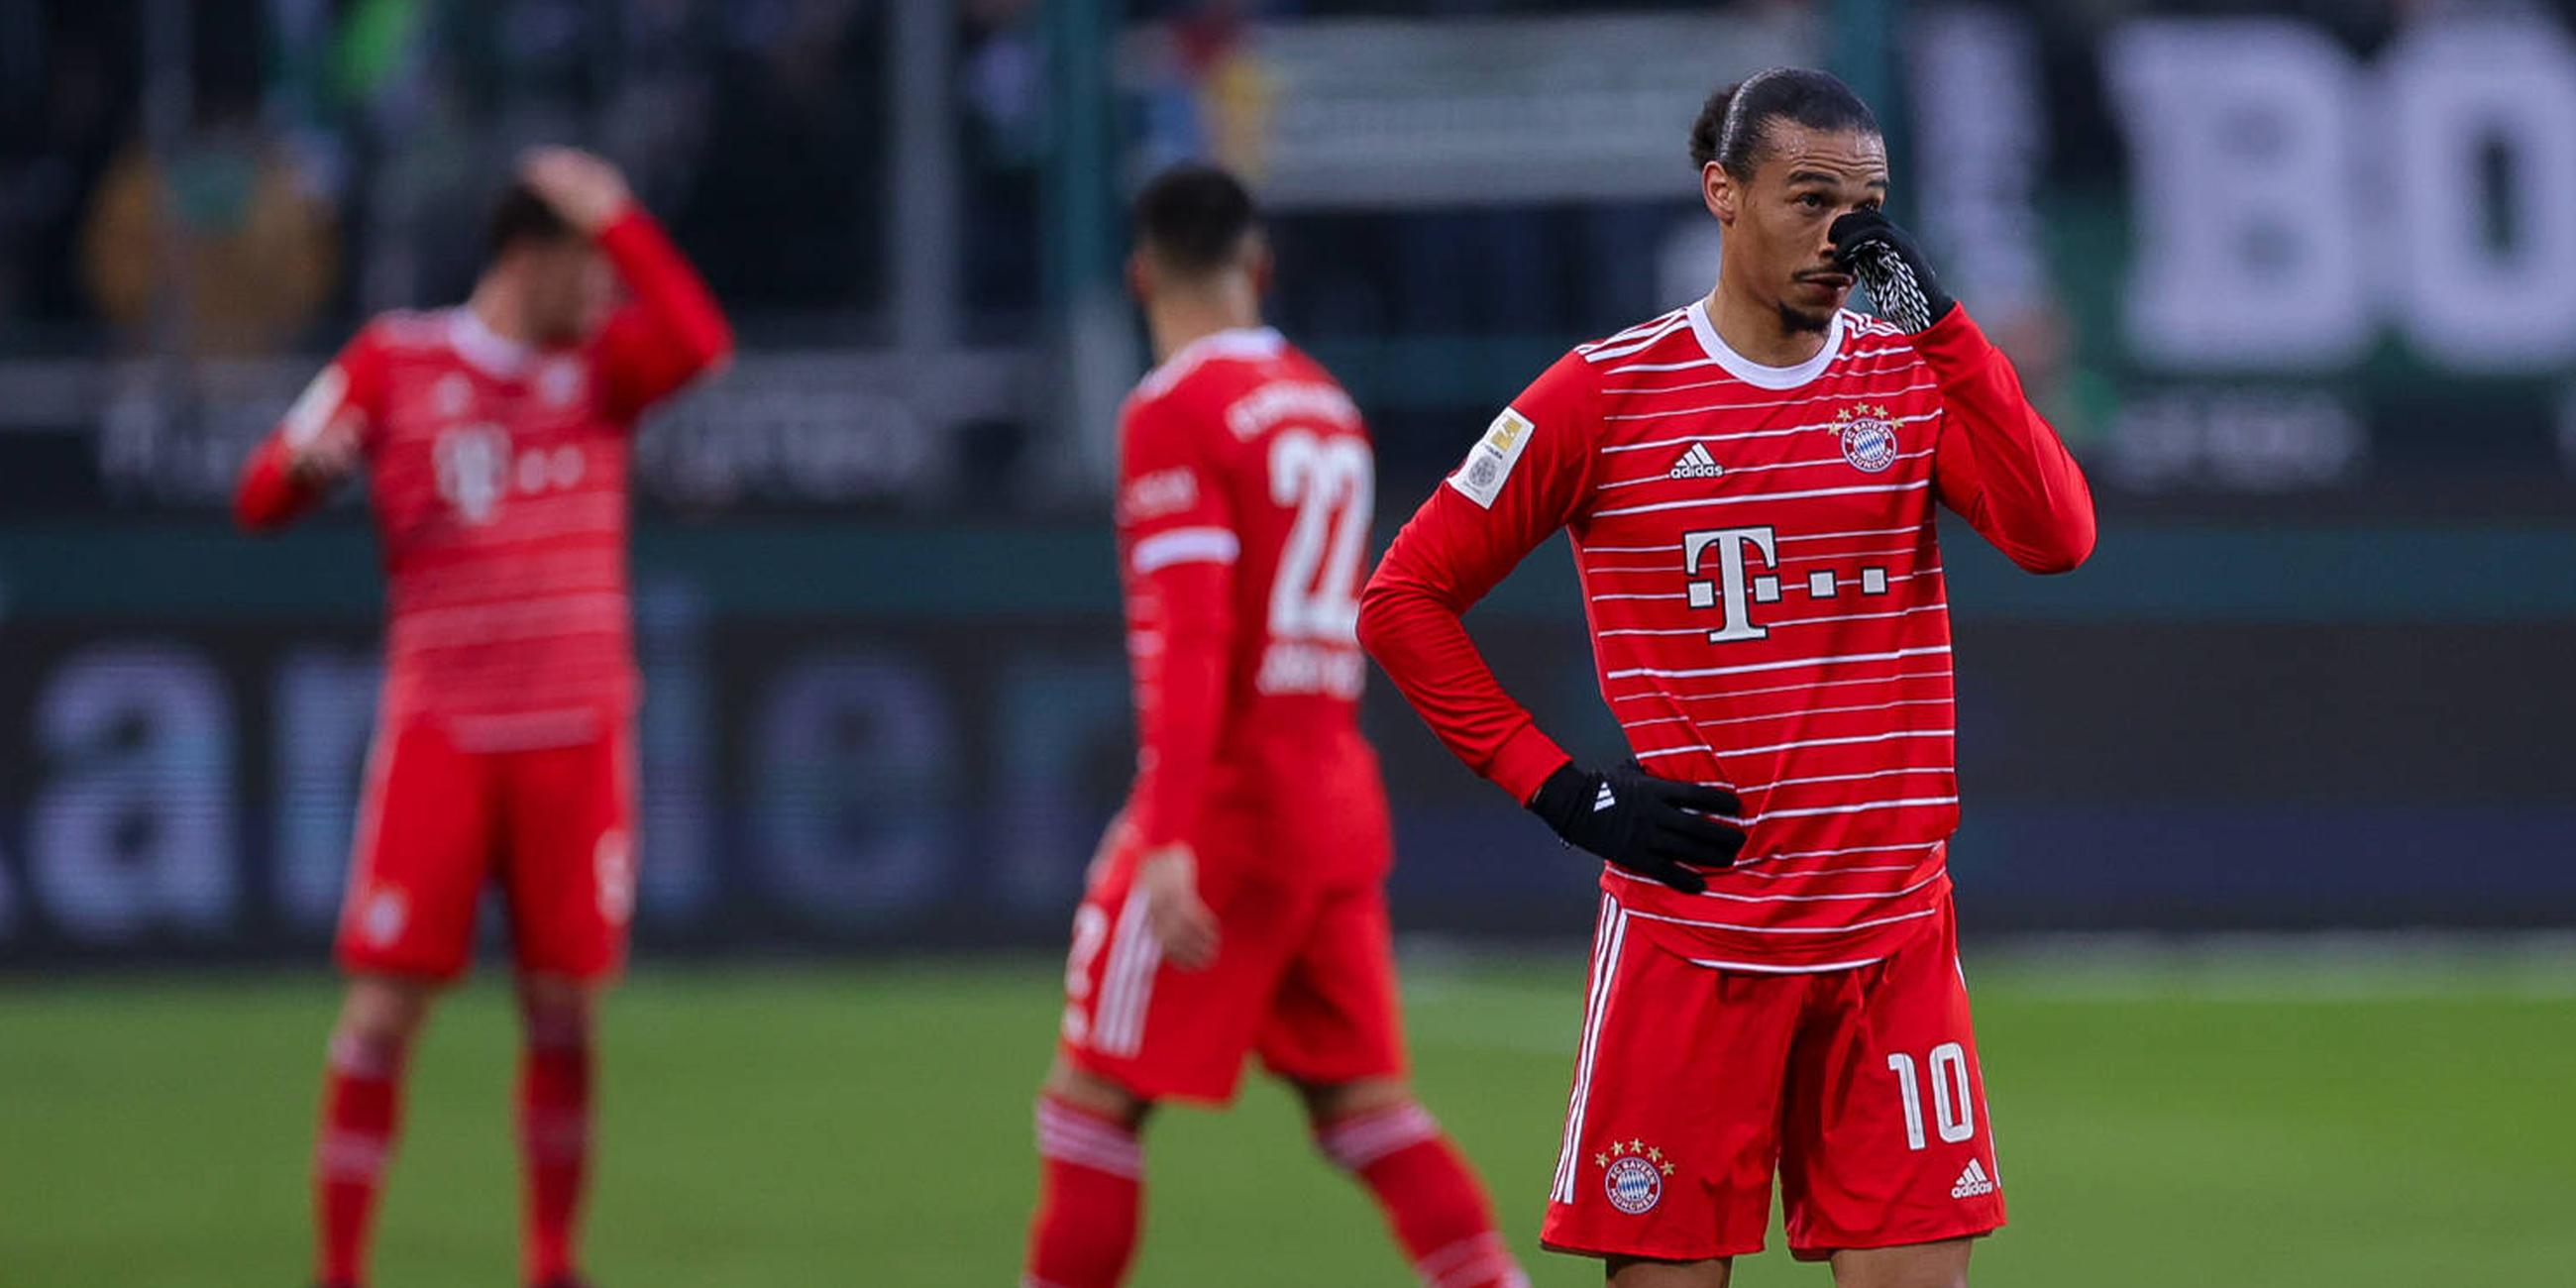 18.02.2023, Möchengladbach: Leroy Sane (Bayern München) enttäuscht nach dem Spiel gegen Borussia Mönchengladbach